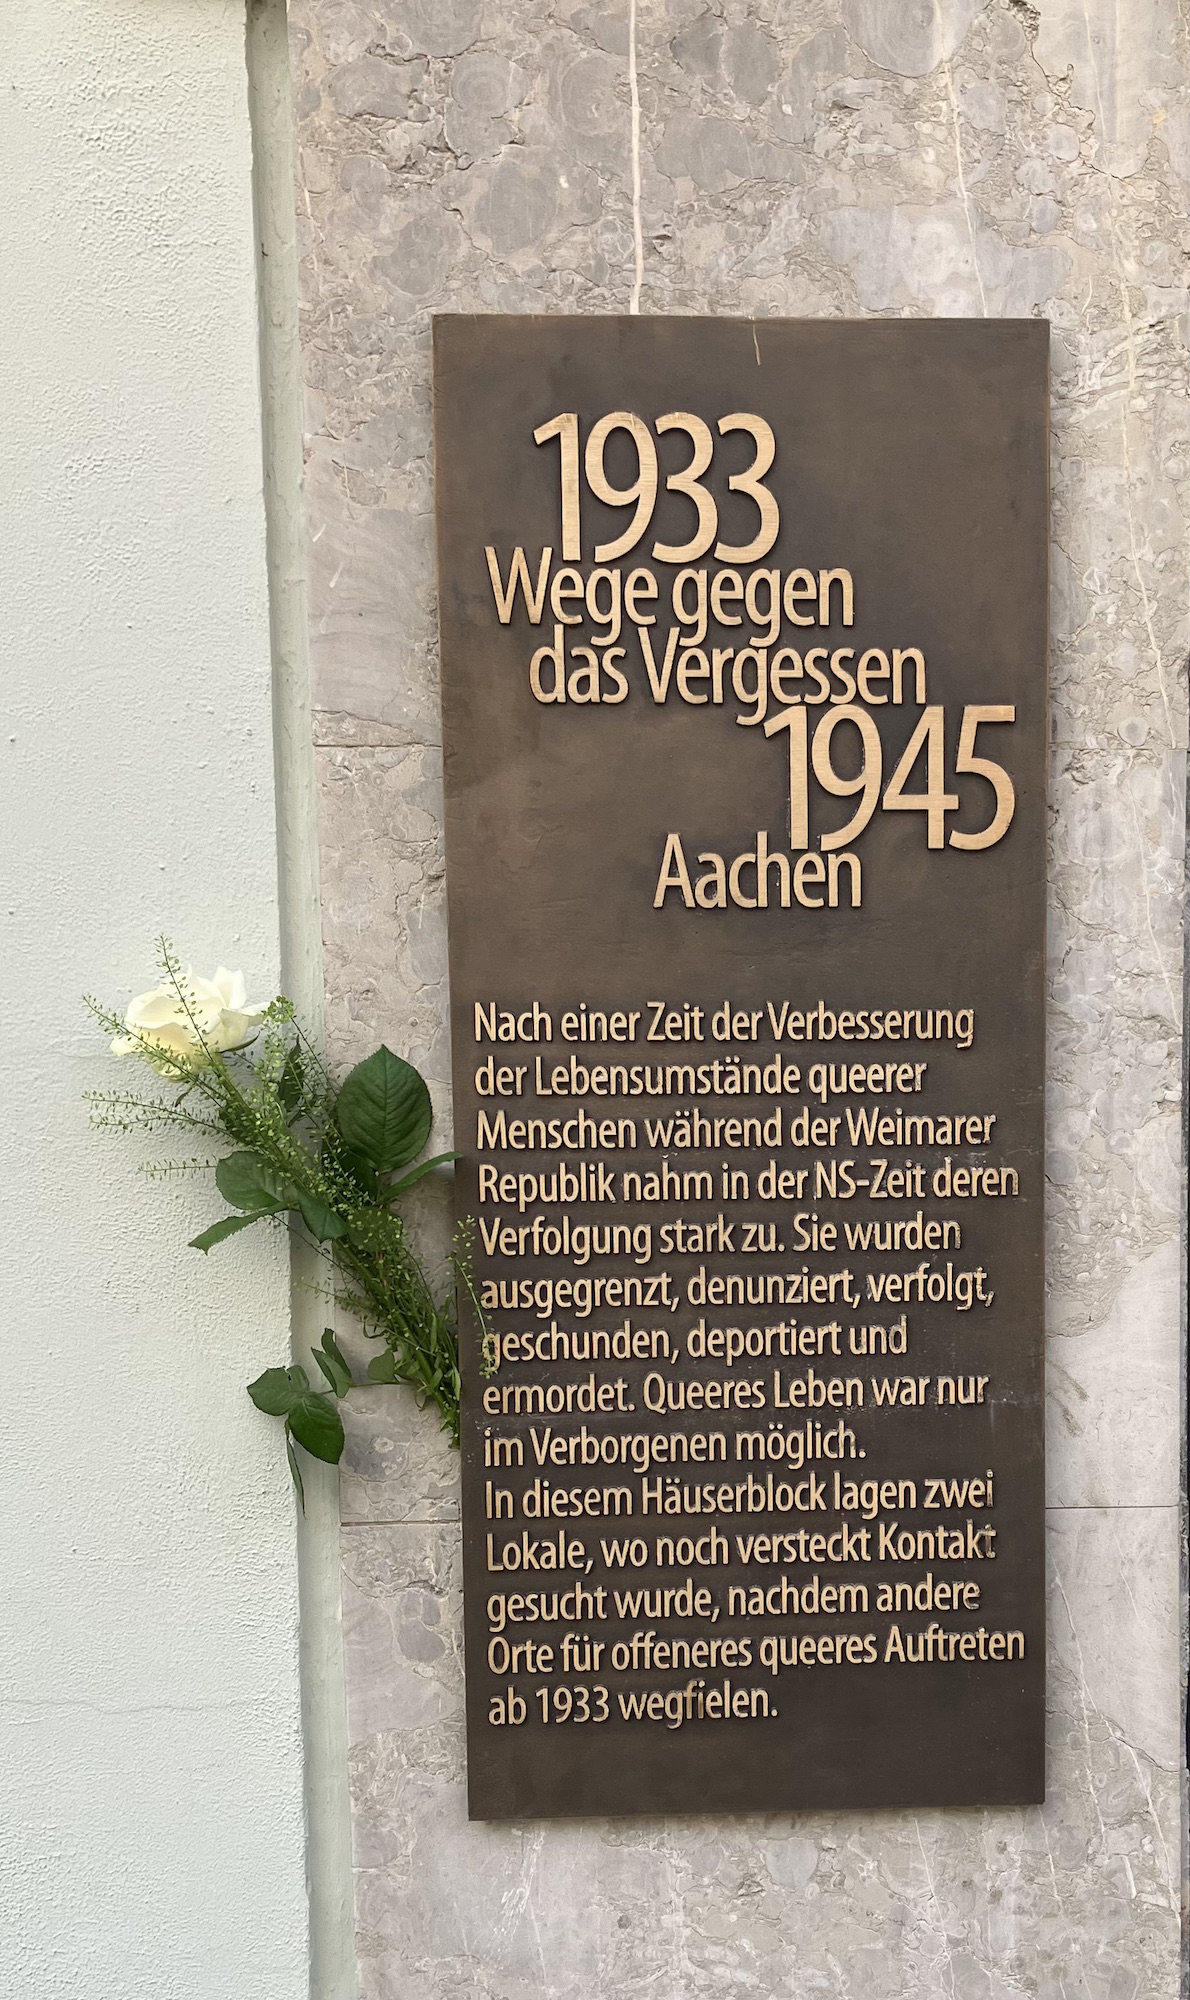 Die Gedenktafel auf dem Münsterplatz, die im Rahmen des CSD enthüllt wurde, erinnert an die Verfolgung queerer Menschen in der NS-Zeit. (c) Andrea Thomas